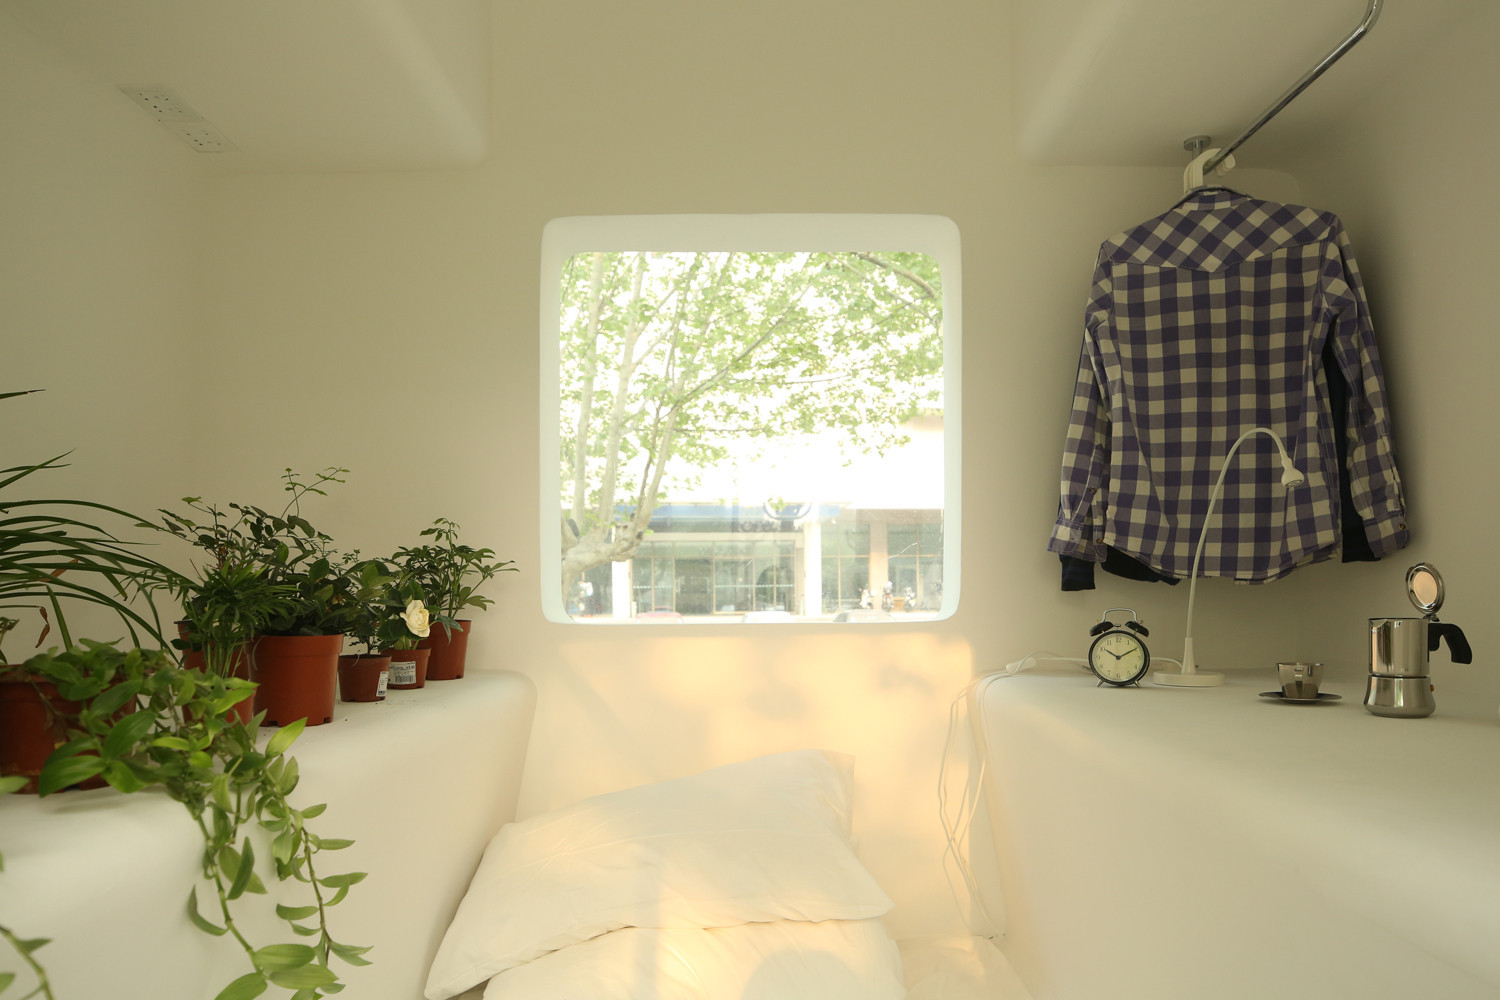 Hình ảnh một căn phòng tông màu trắng chủ đạo với khung cửa sổ lớn mở ra cảnh quan bên ngoài, những chậu cây xanh đặt sát tường, cạnh đó là móc treo quần áo gọn gàng.